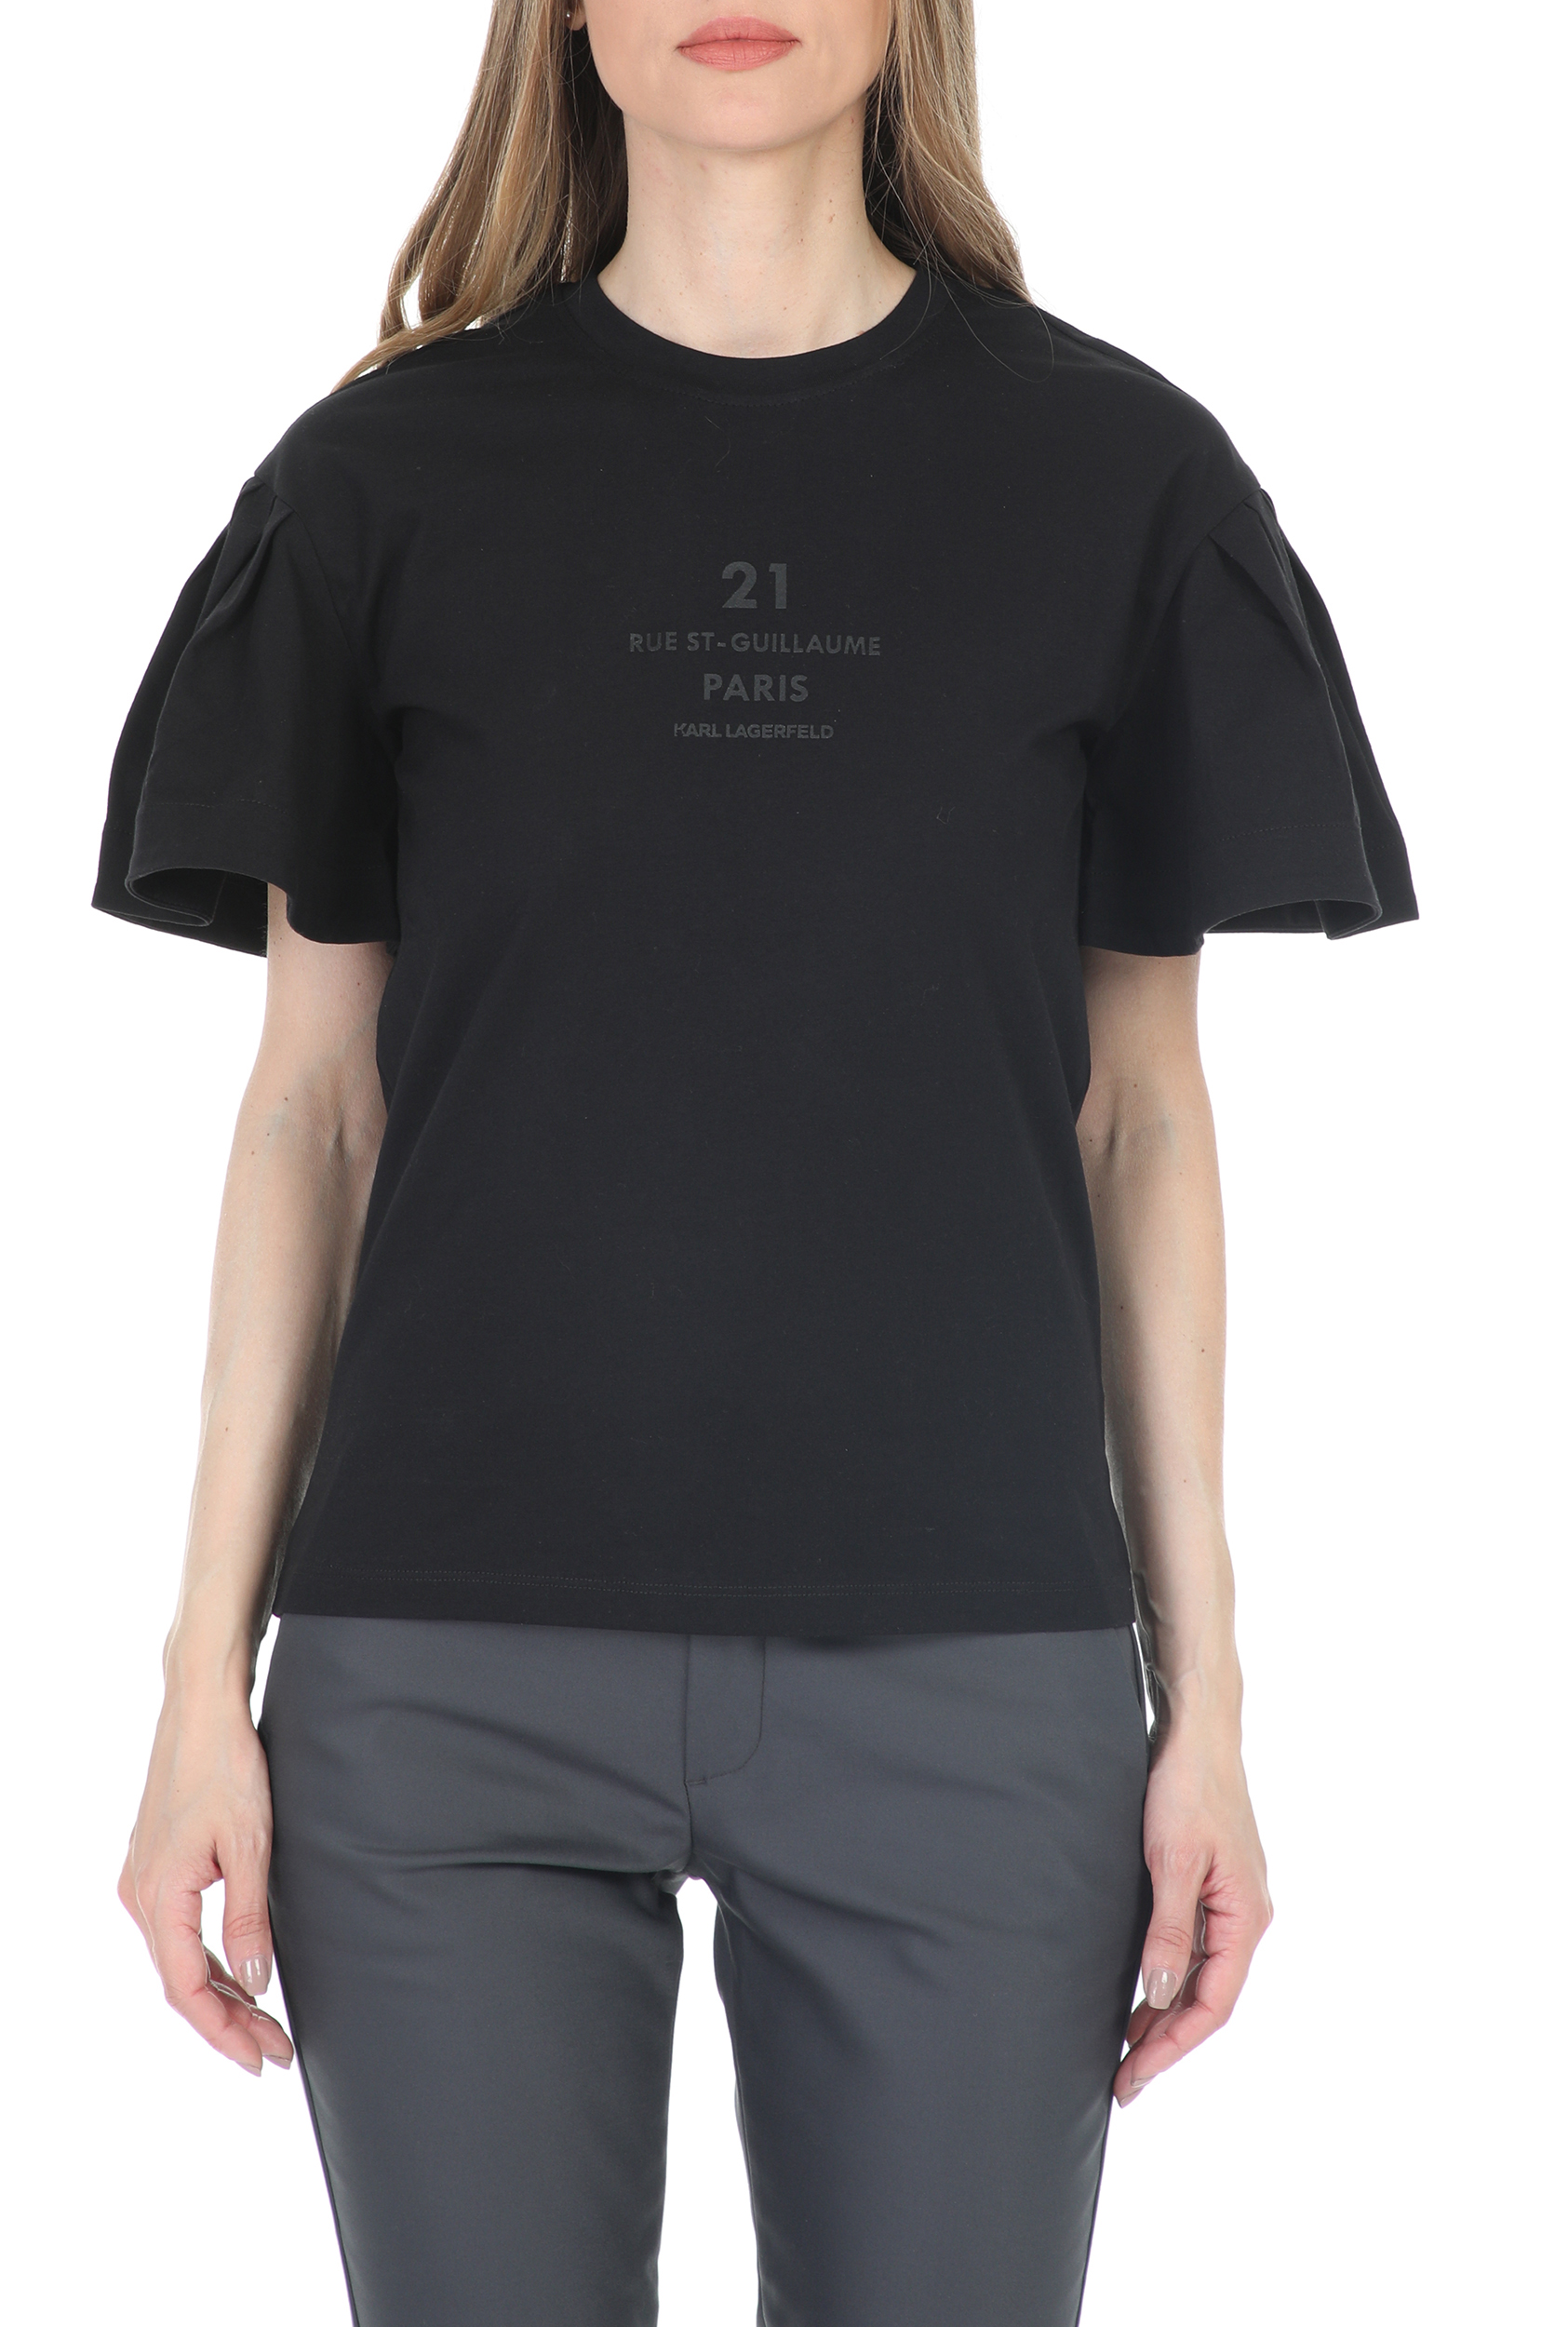 Γυναικεία/Ρούχα/Μπλούζες/Κοντομάνικες KARL LAGERFELD - Γυναικείο t-shirt KARL LAGERFELD Puffy Sleeve μαύρο